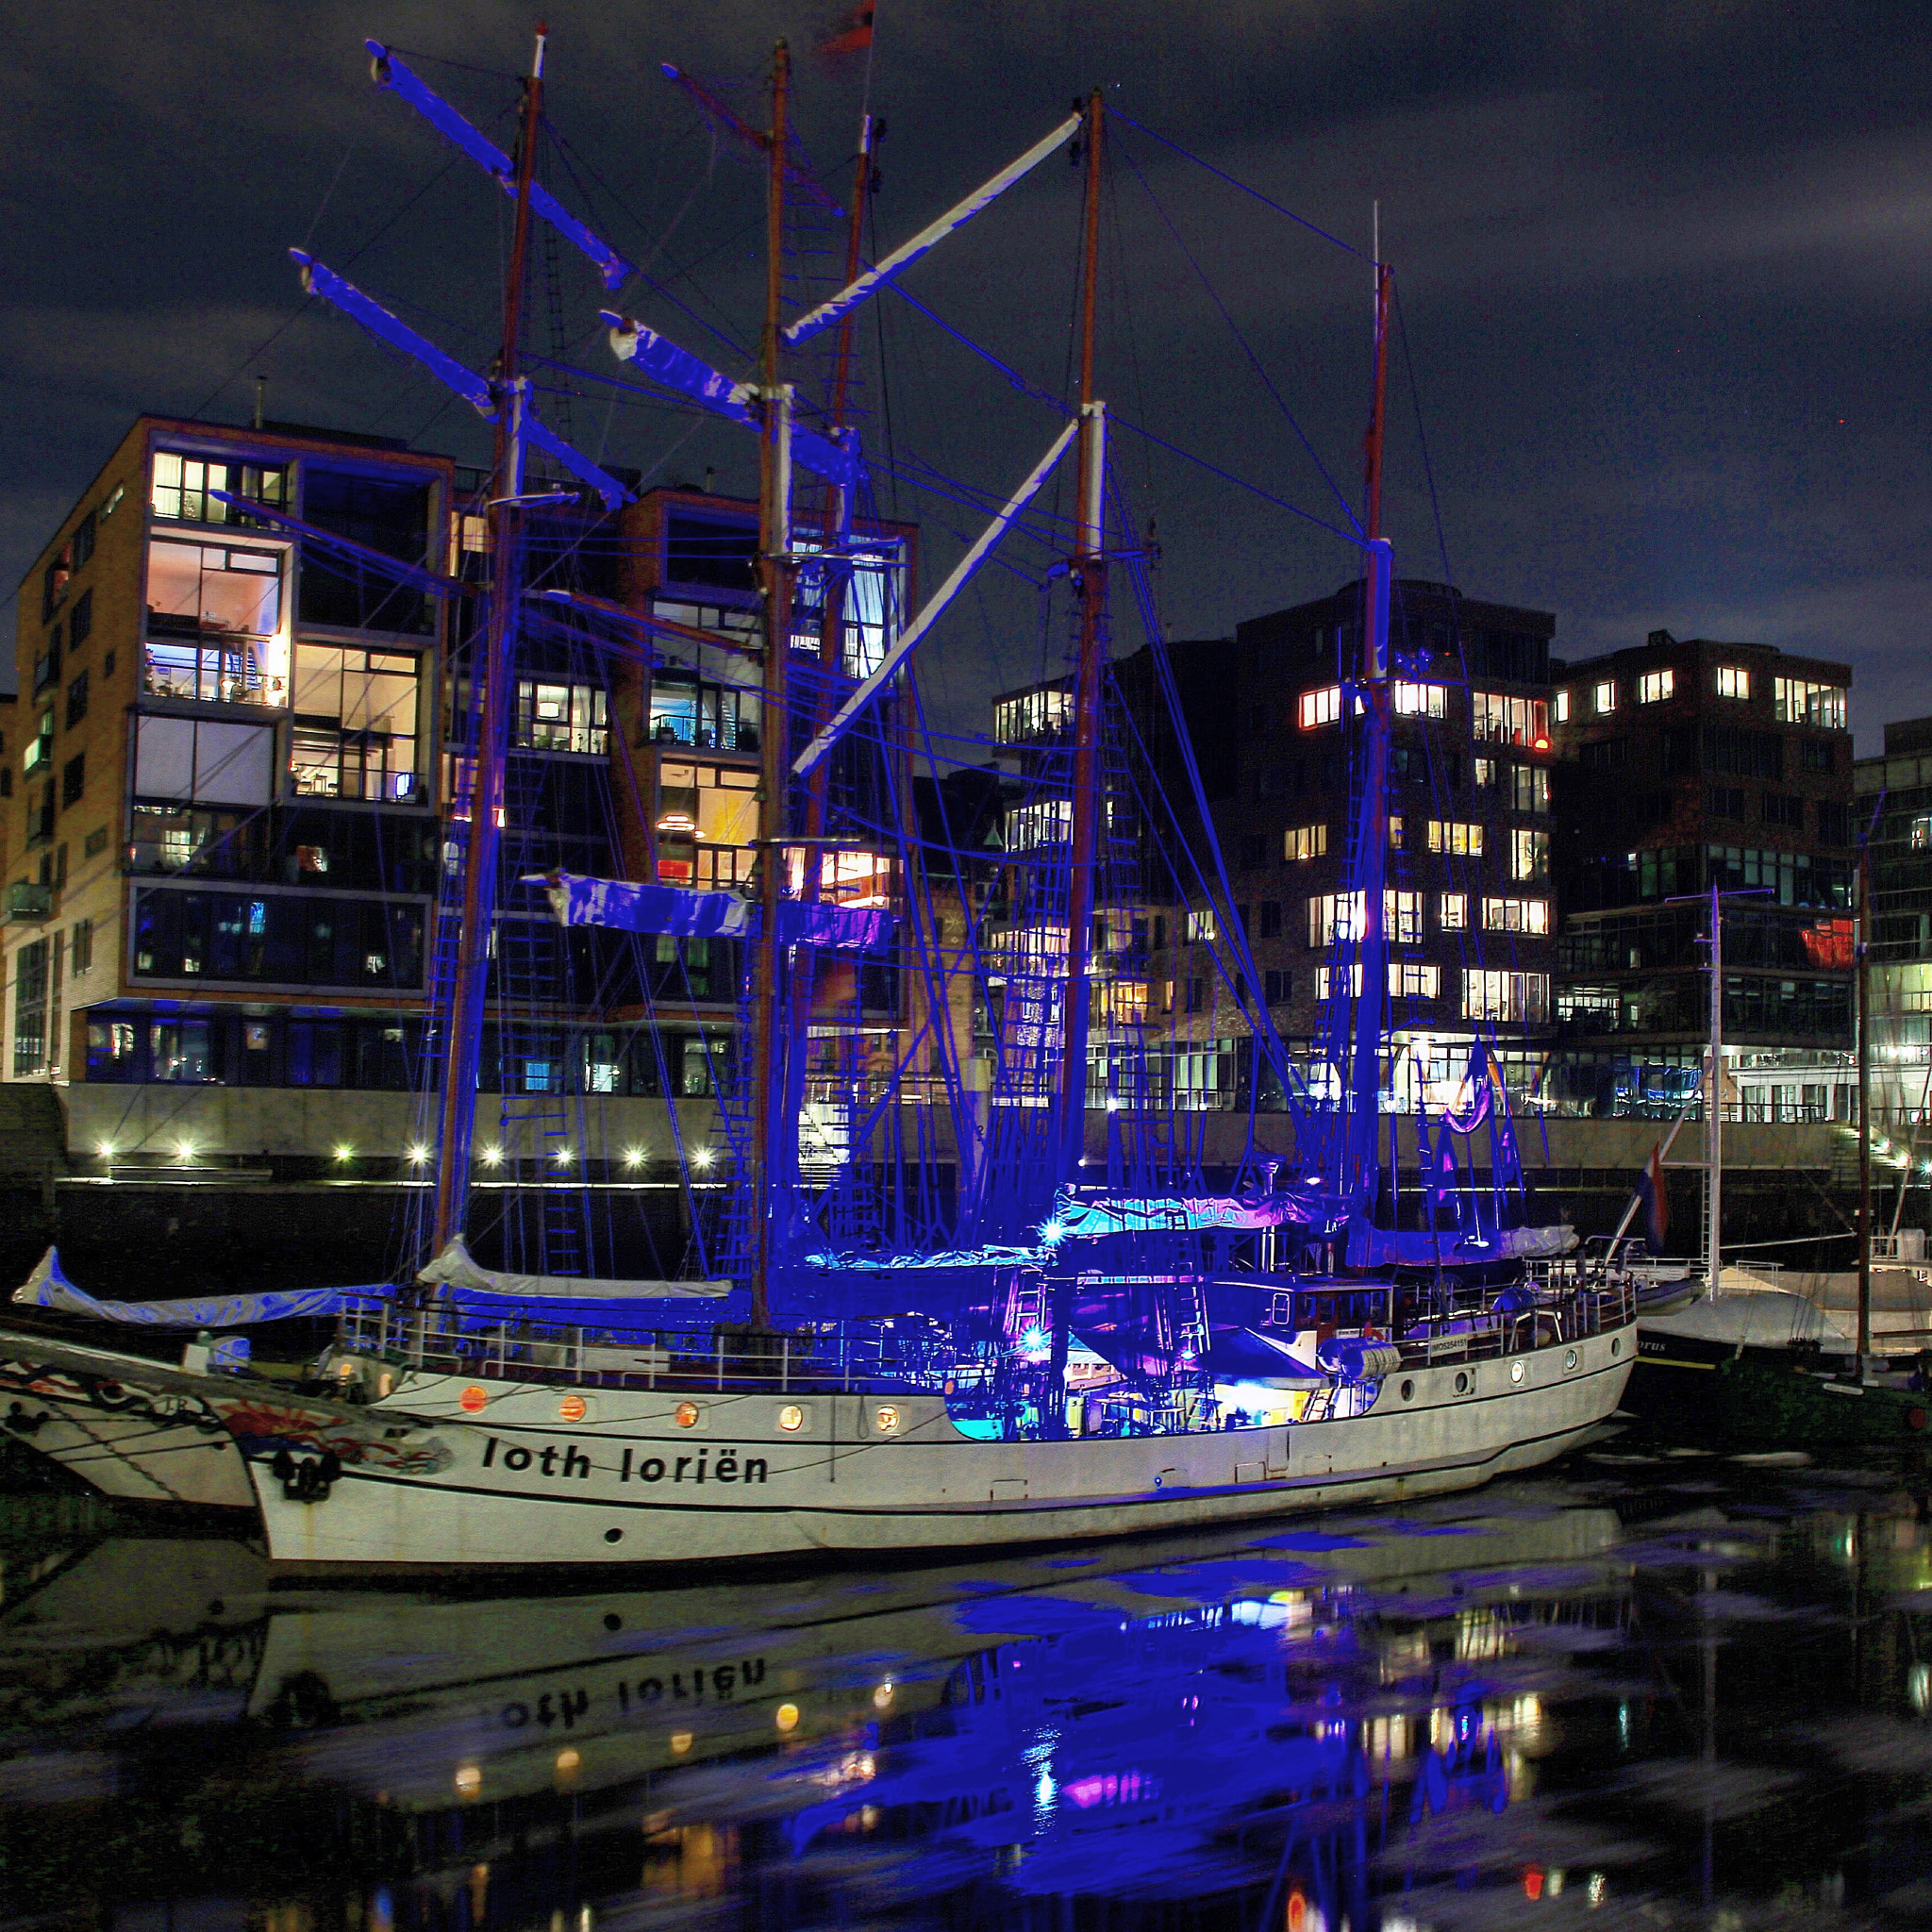 Canon EOS 7D + Canon 18-200mm sample photo. Abends werden vom deck aus die masten blau angestrahlt. hamburg hafen city photography